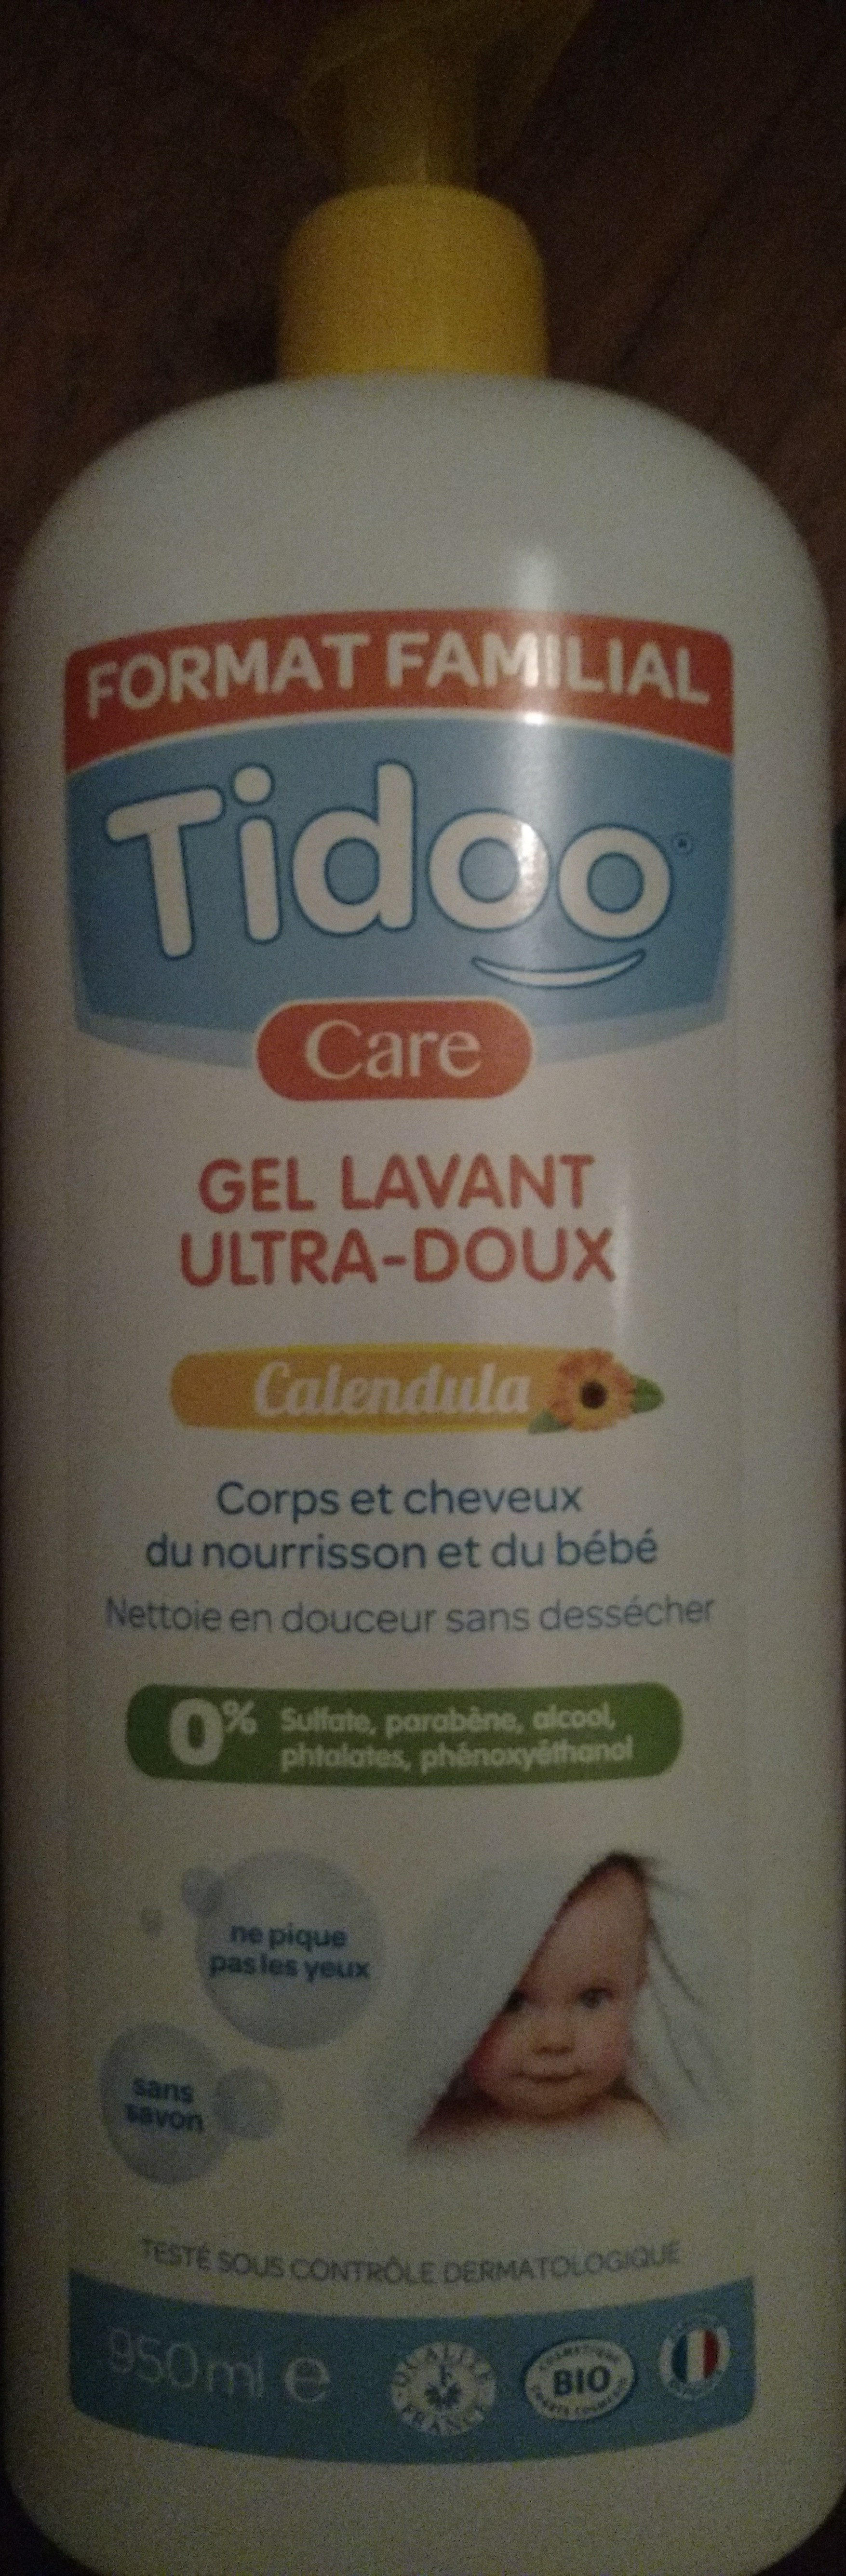 gel lavant ultra-doux - מוצר - fr